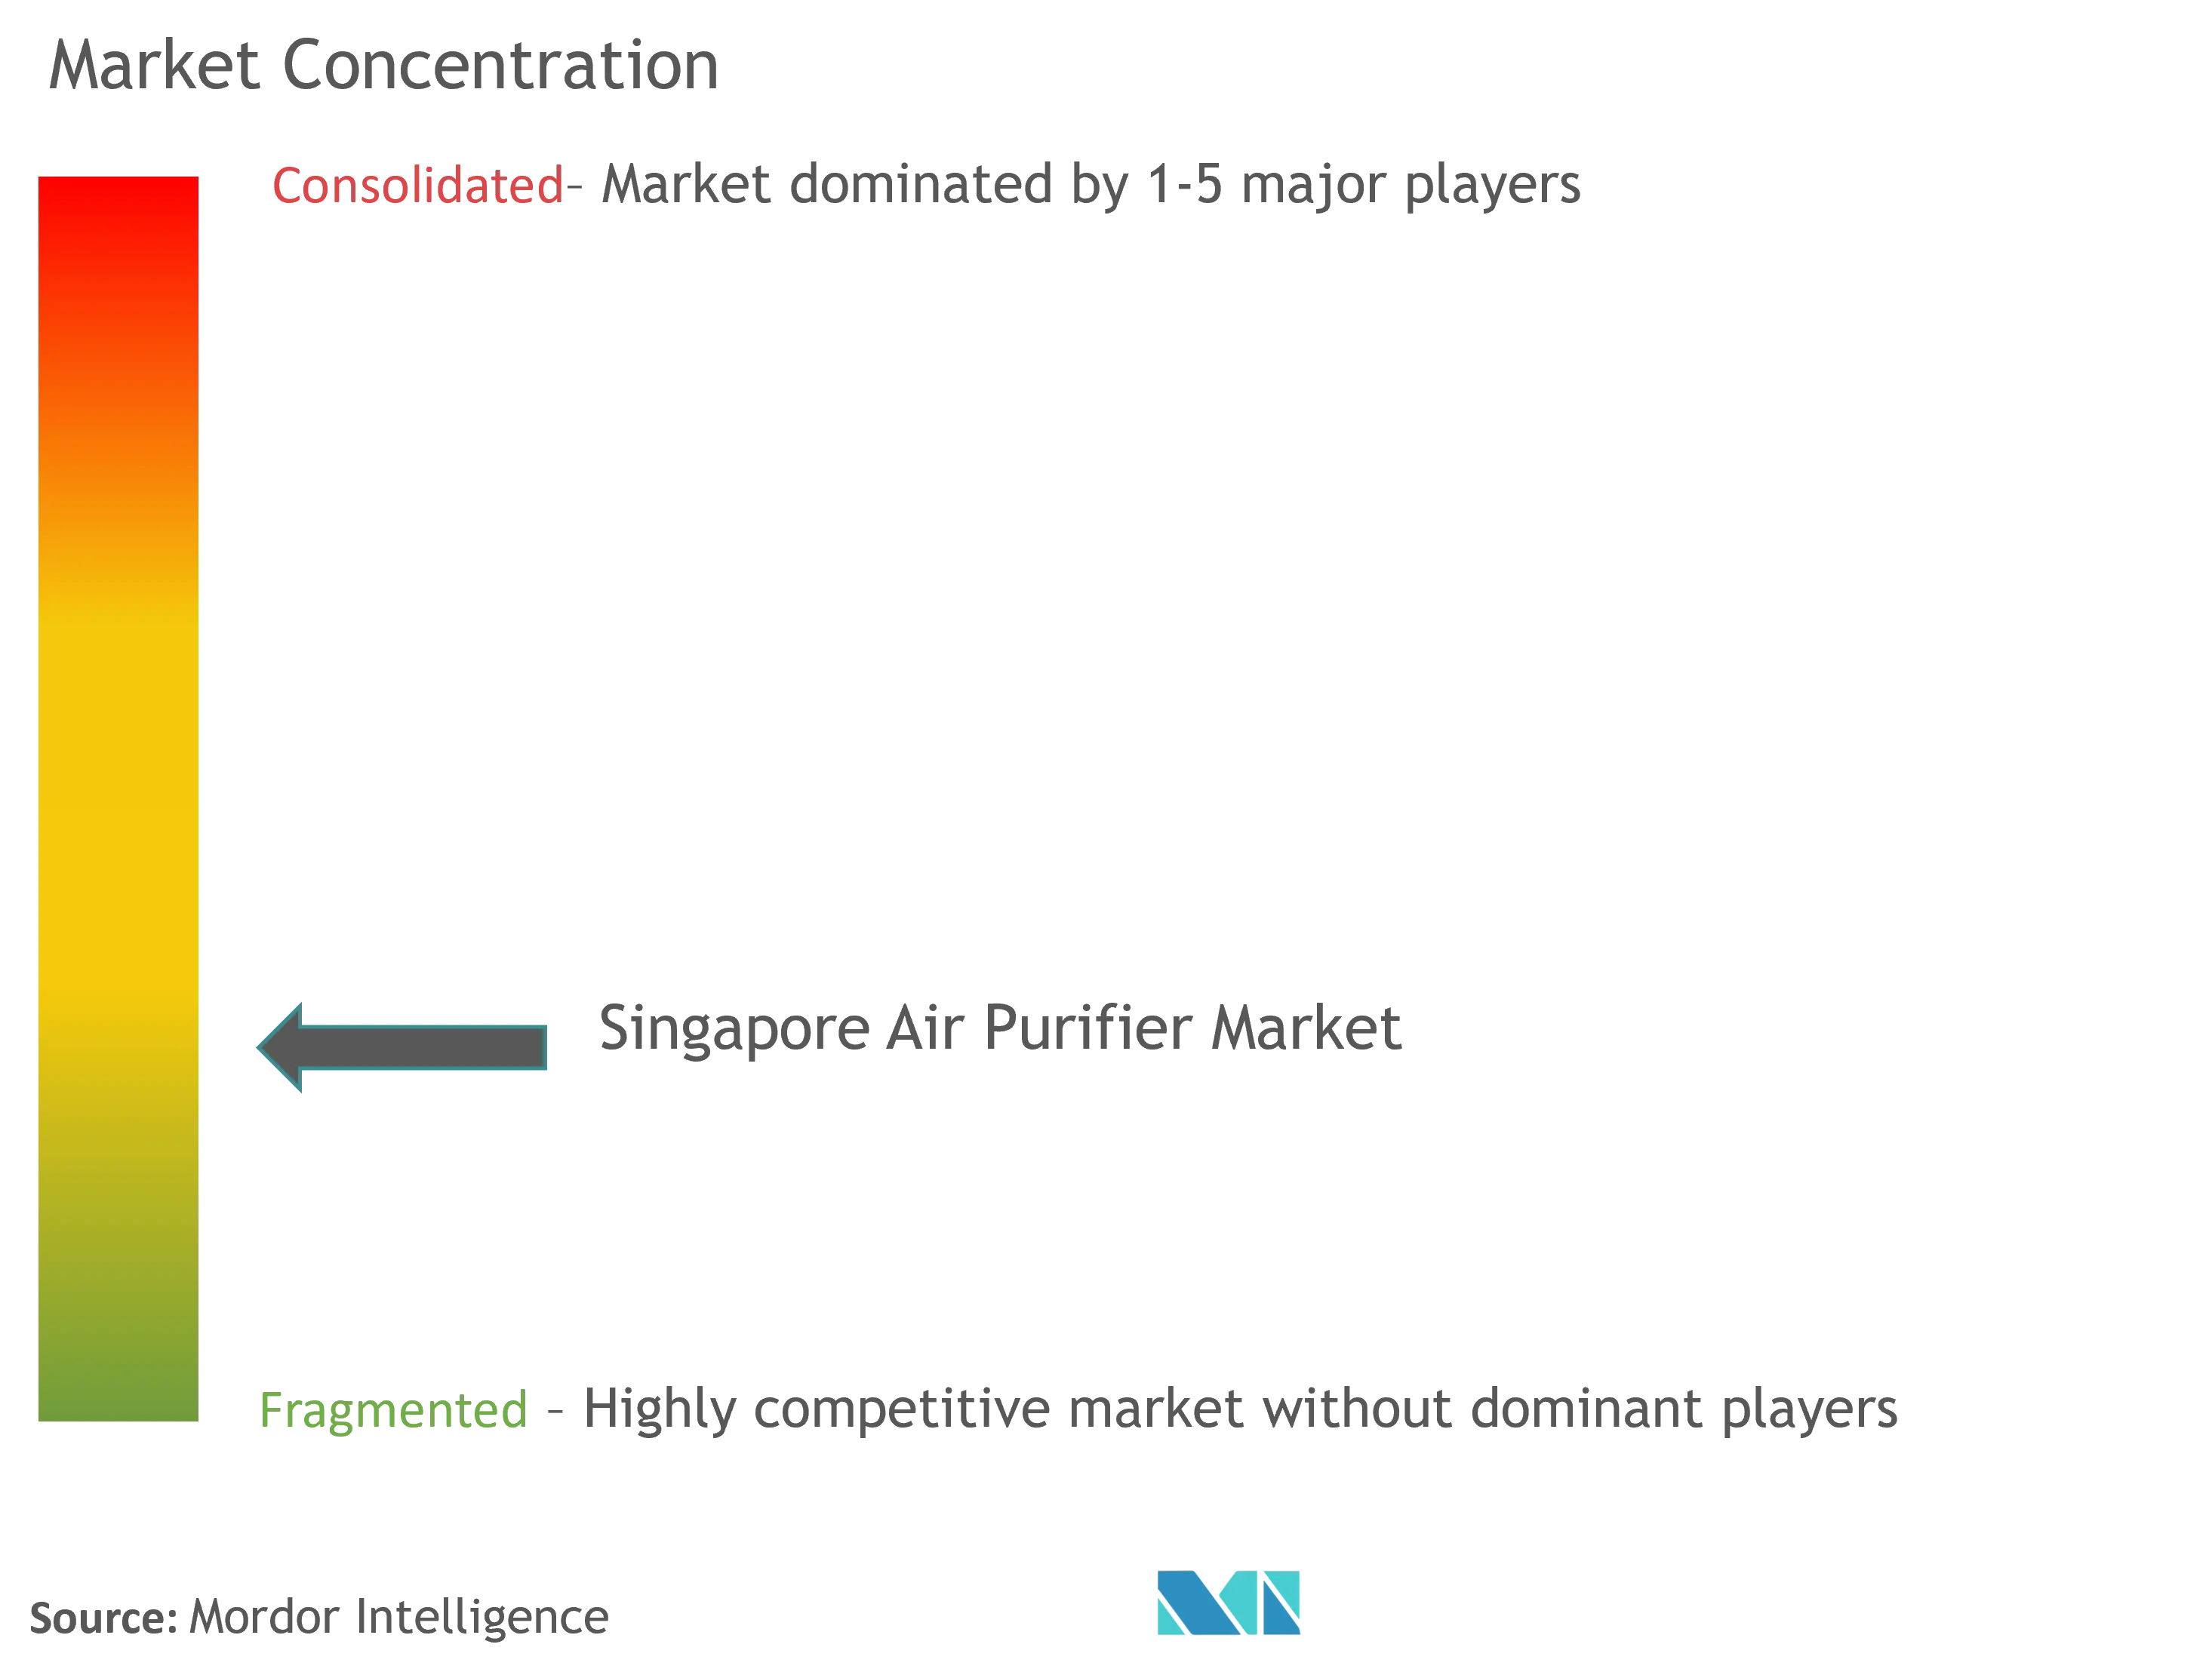 Singapore Air Purifier Market Concentration